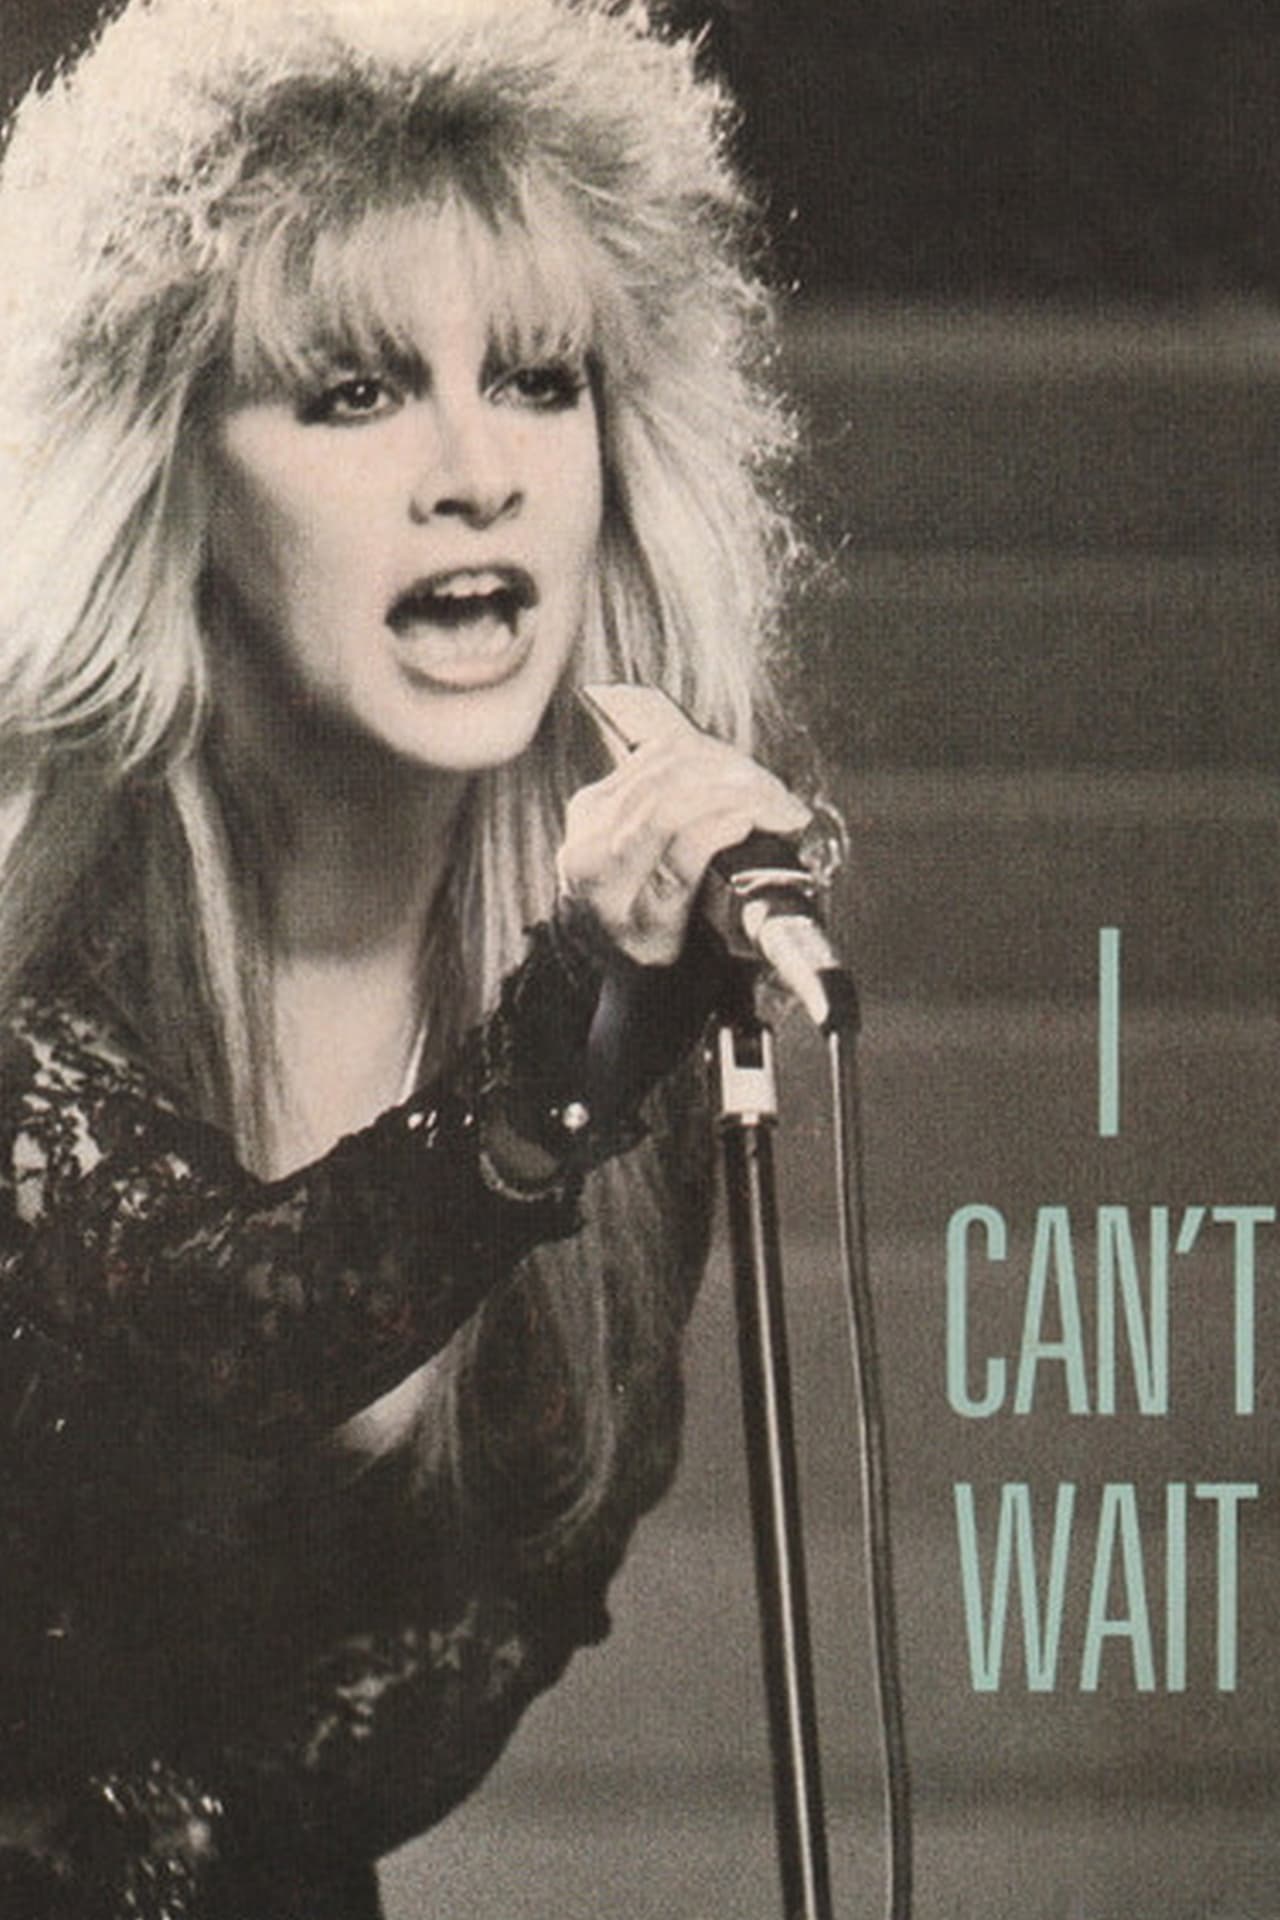 Stevie Nicks: I Can't Wait